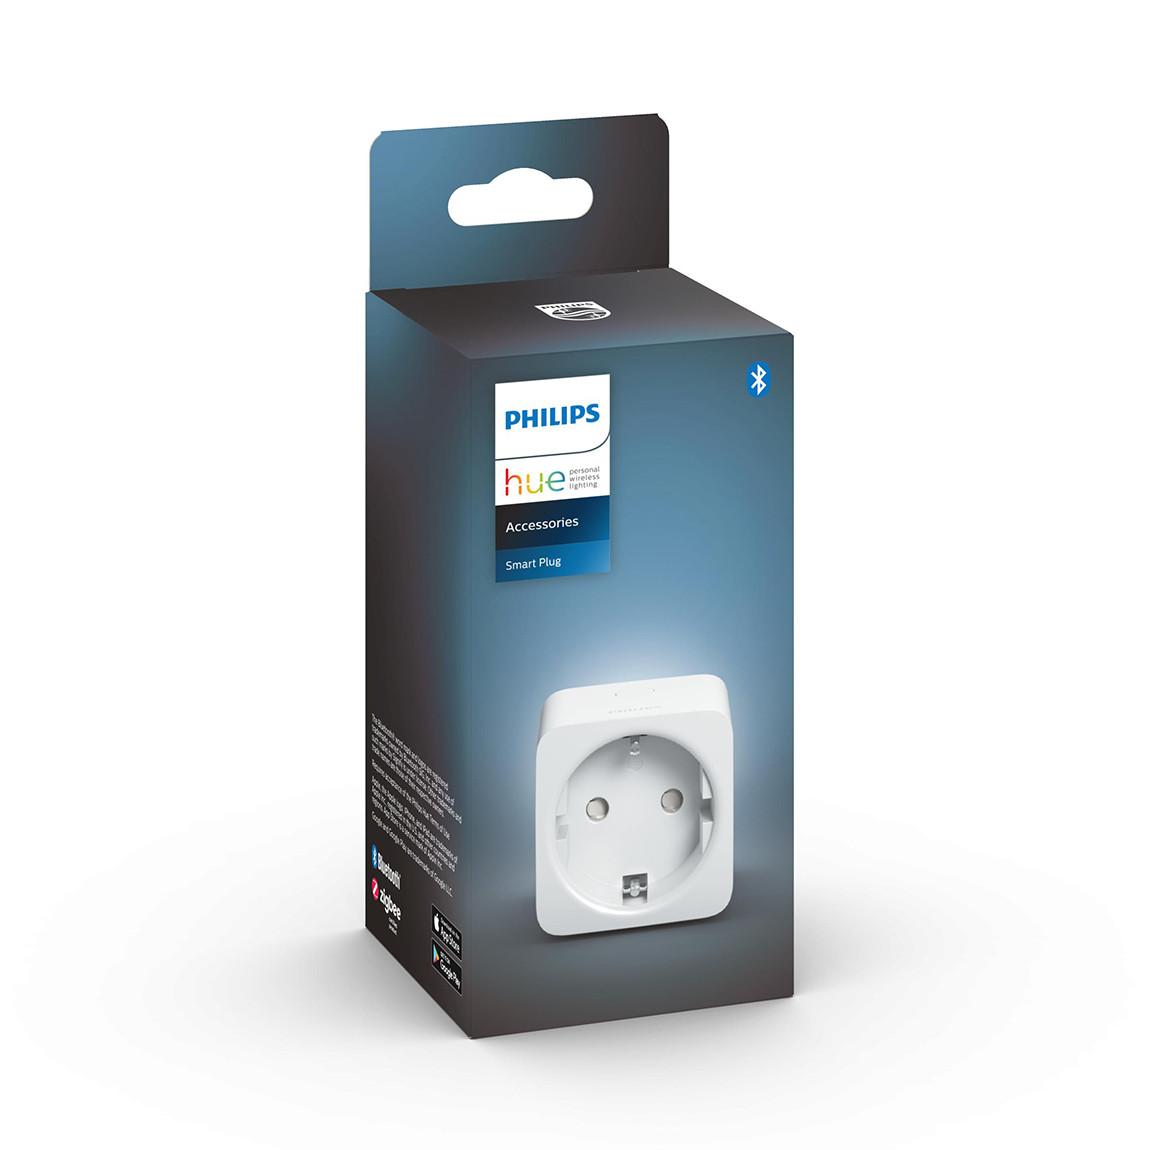 Philips Hue Smart Plug Verpackung